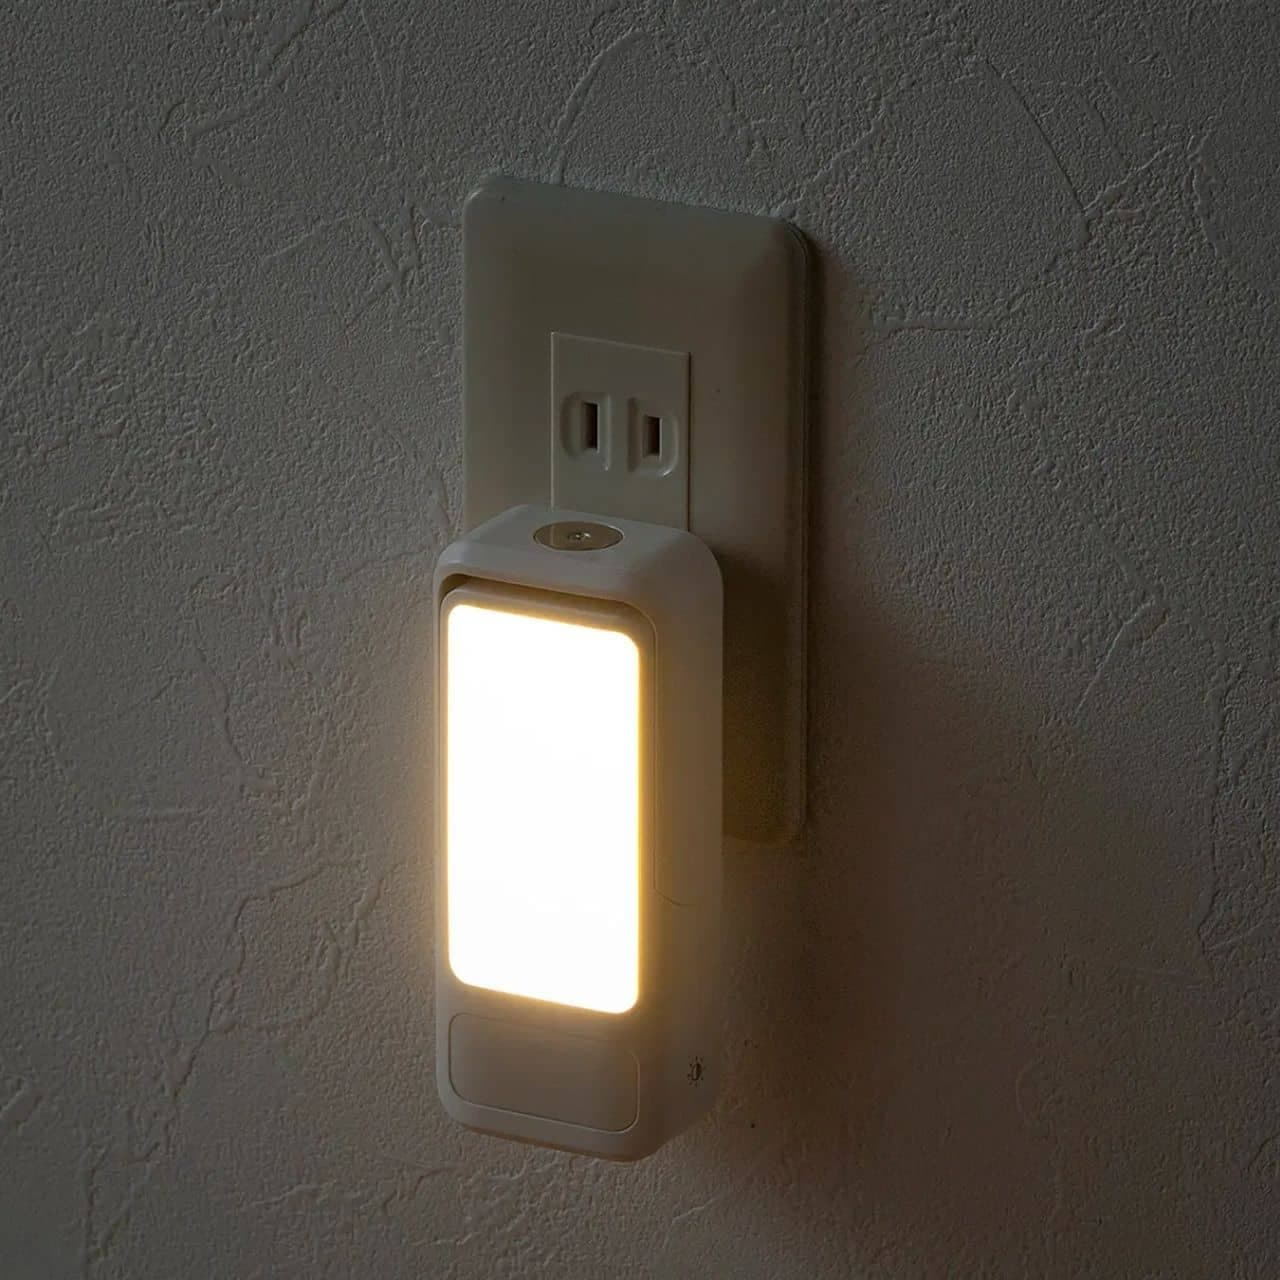 サンワサプライ 小型LEDライト「800-LED084」